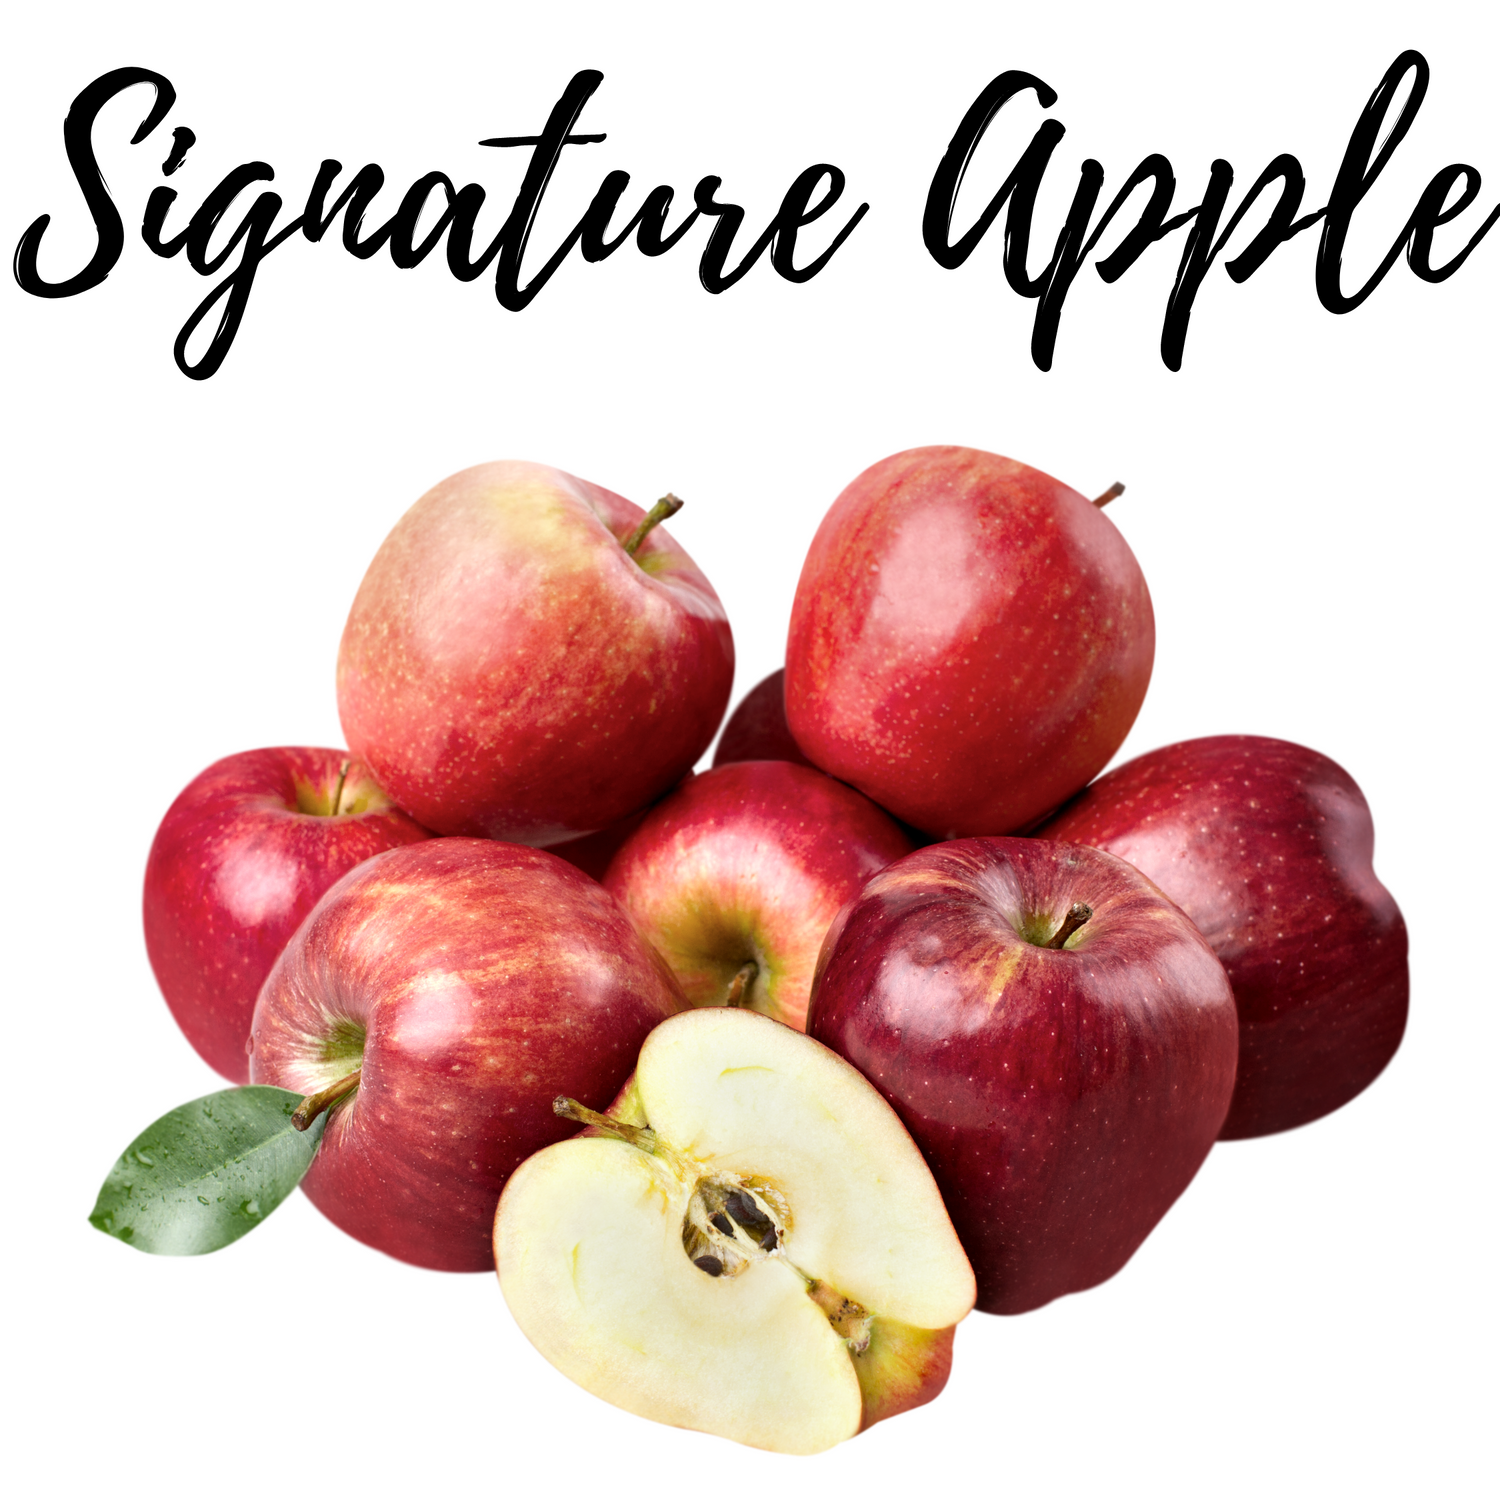 Signature Apple